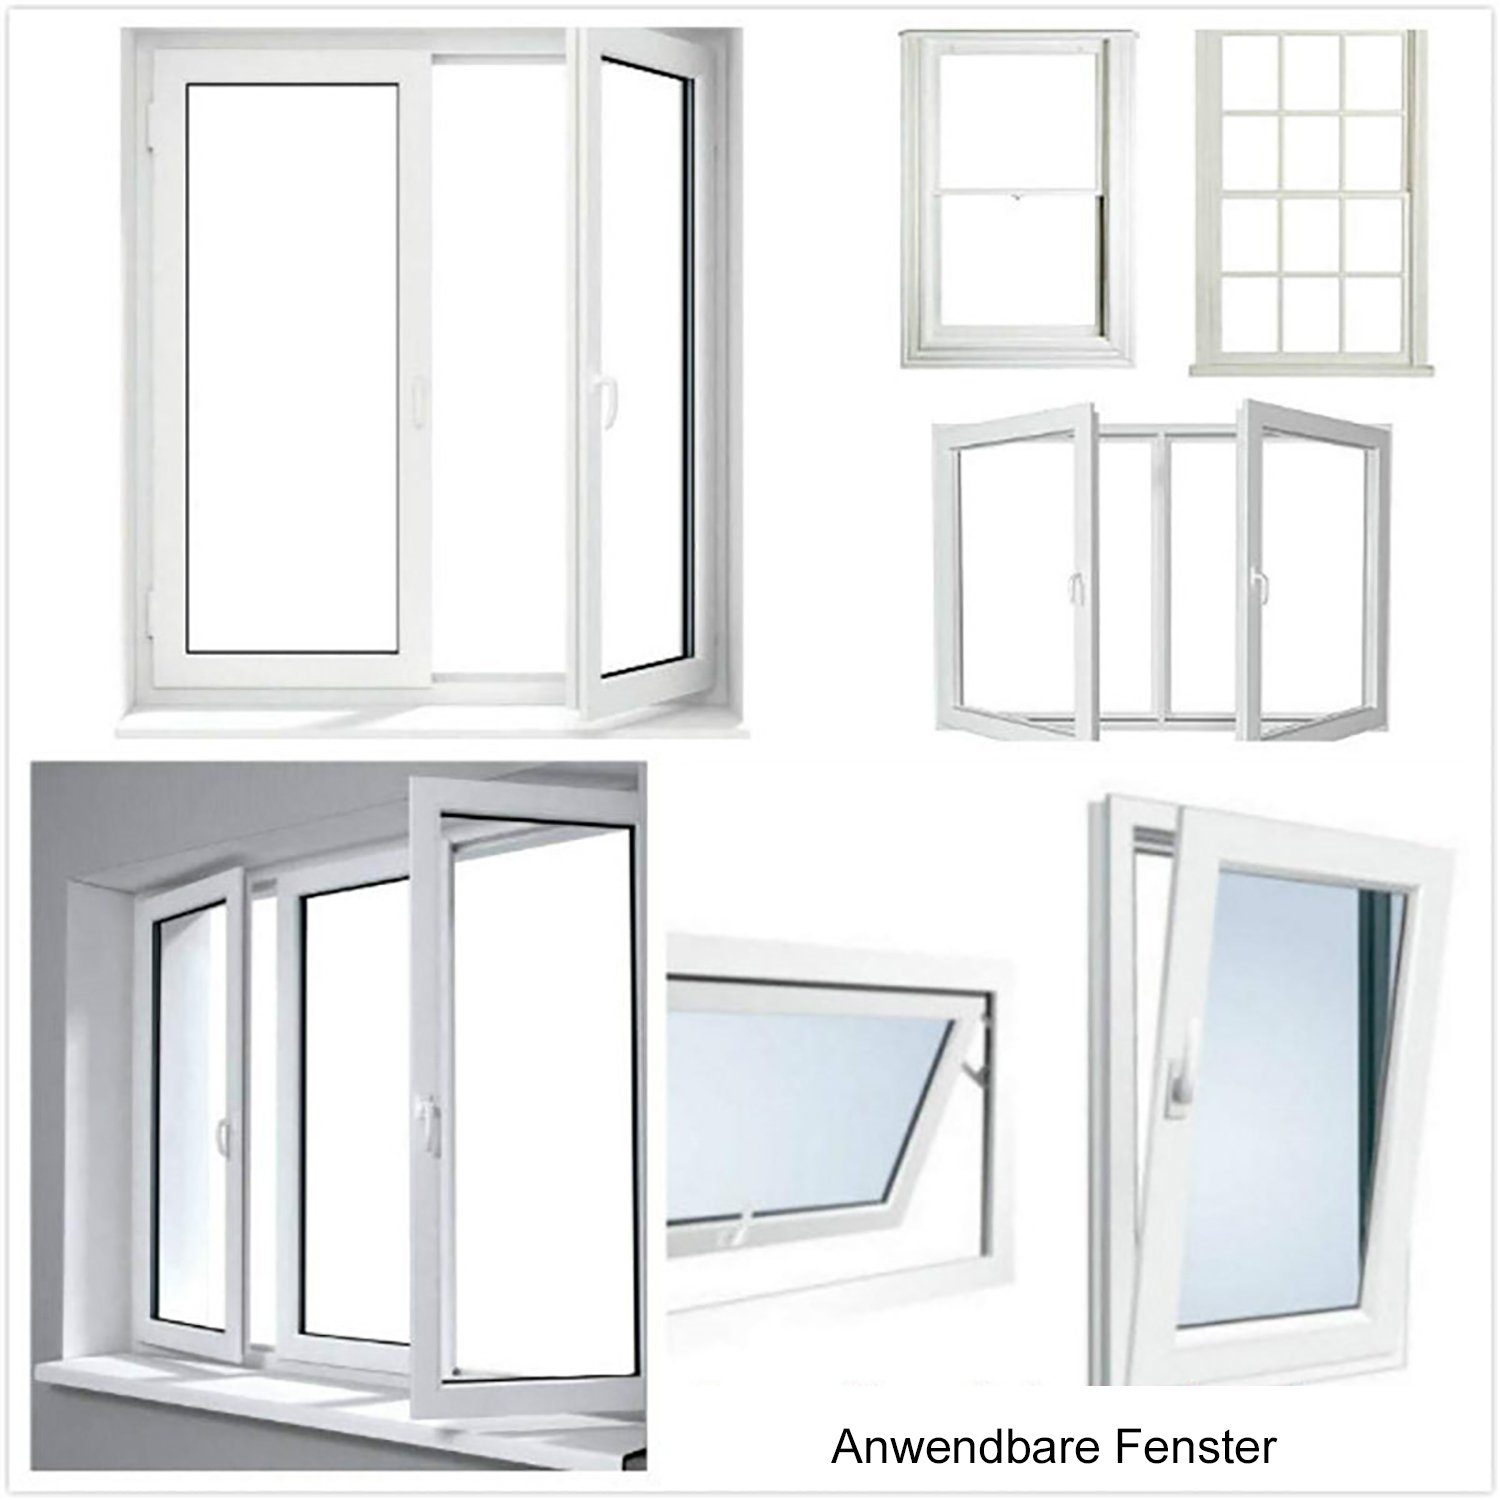 Air 3 für für Eindringen Fensterkit Außenhitze, Stop, / TPFLiving Trockner Meter von Hot Fenster-Set Zubehör Klimagerät, das Mobile Klimageräte und Fenster verhindert Abdichtung Erweiterung Zubehör